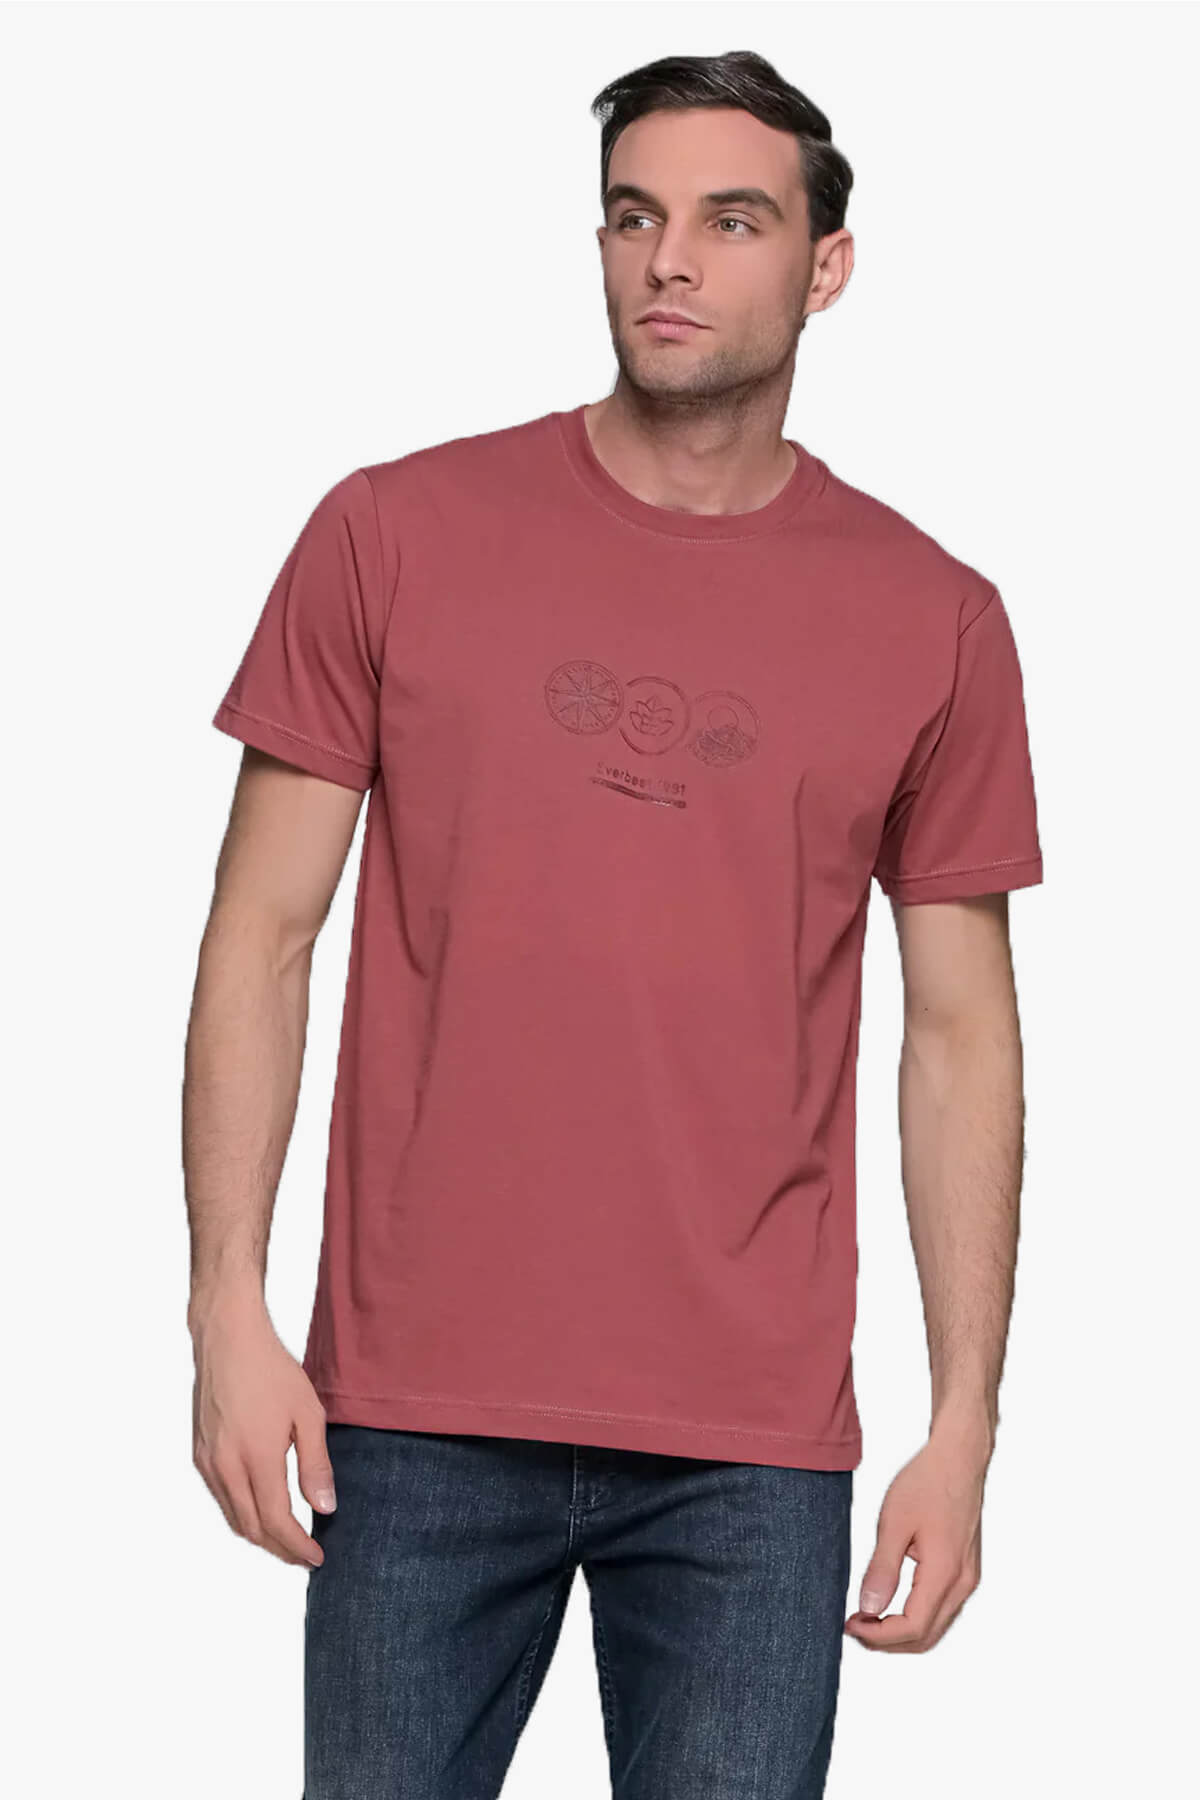 Everbest T-Shirt Με Σχέδιο Capillary Circle